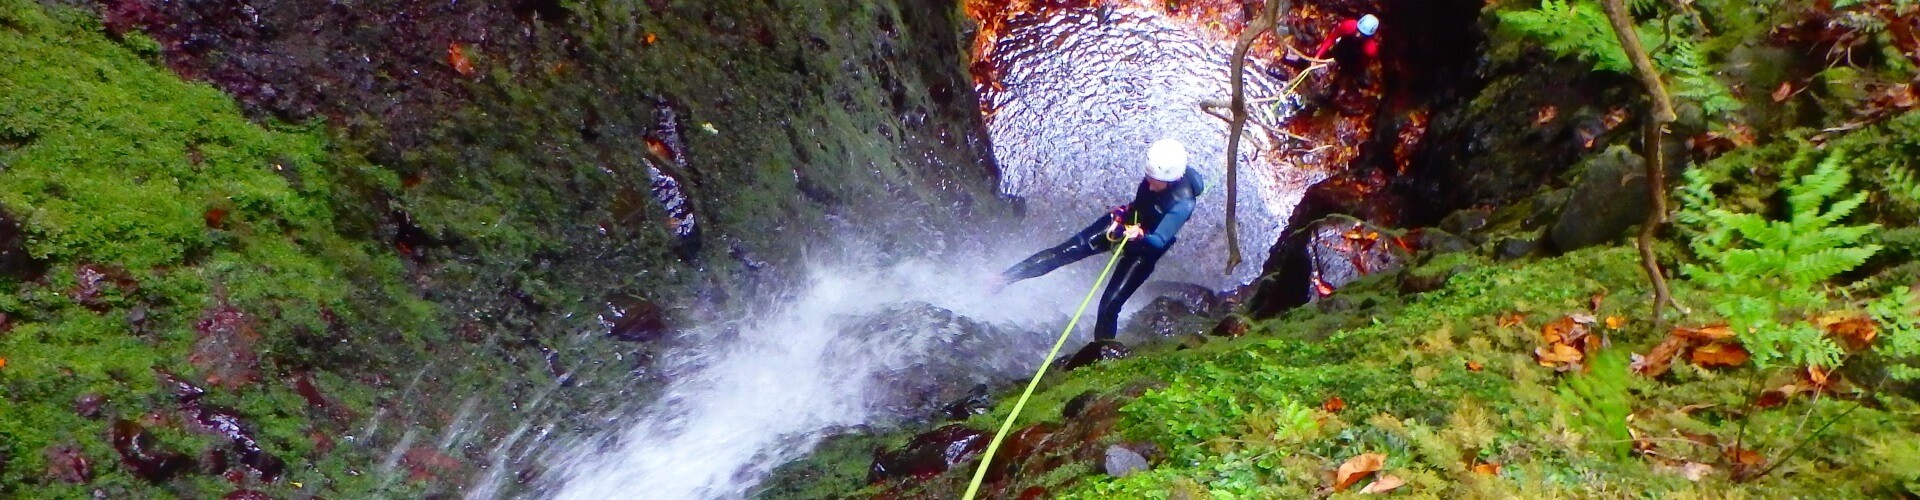 Canyoning Madeira Epic Level 1 Beginners